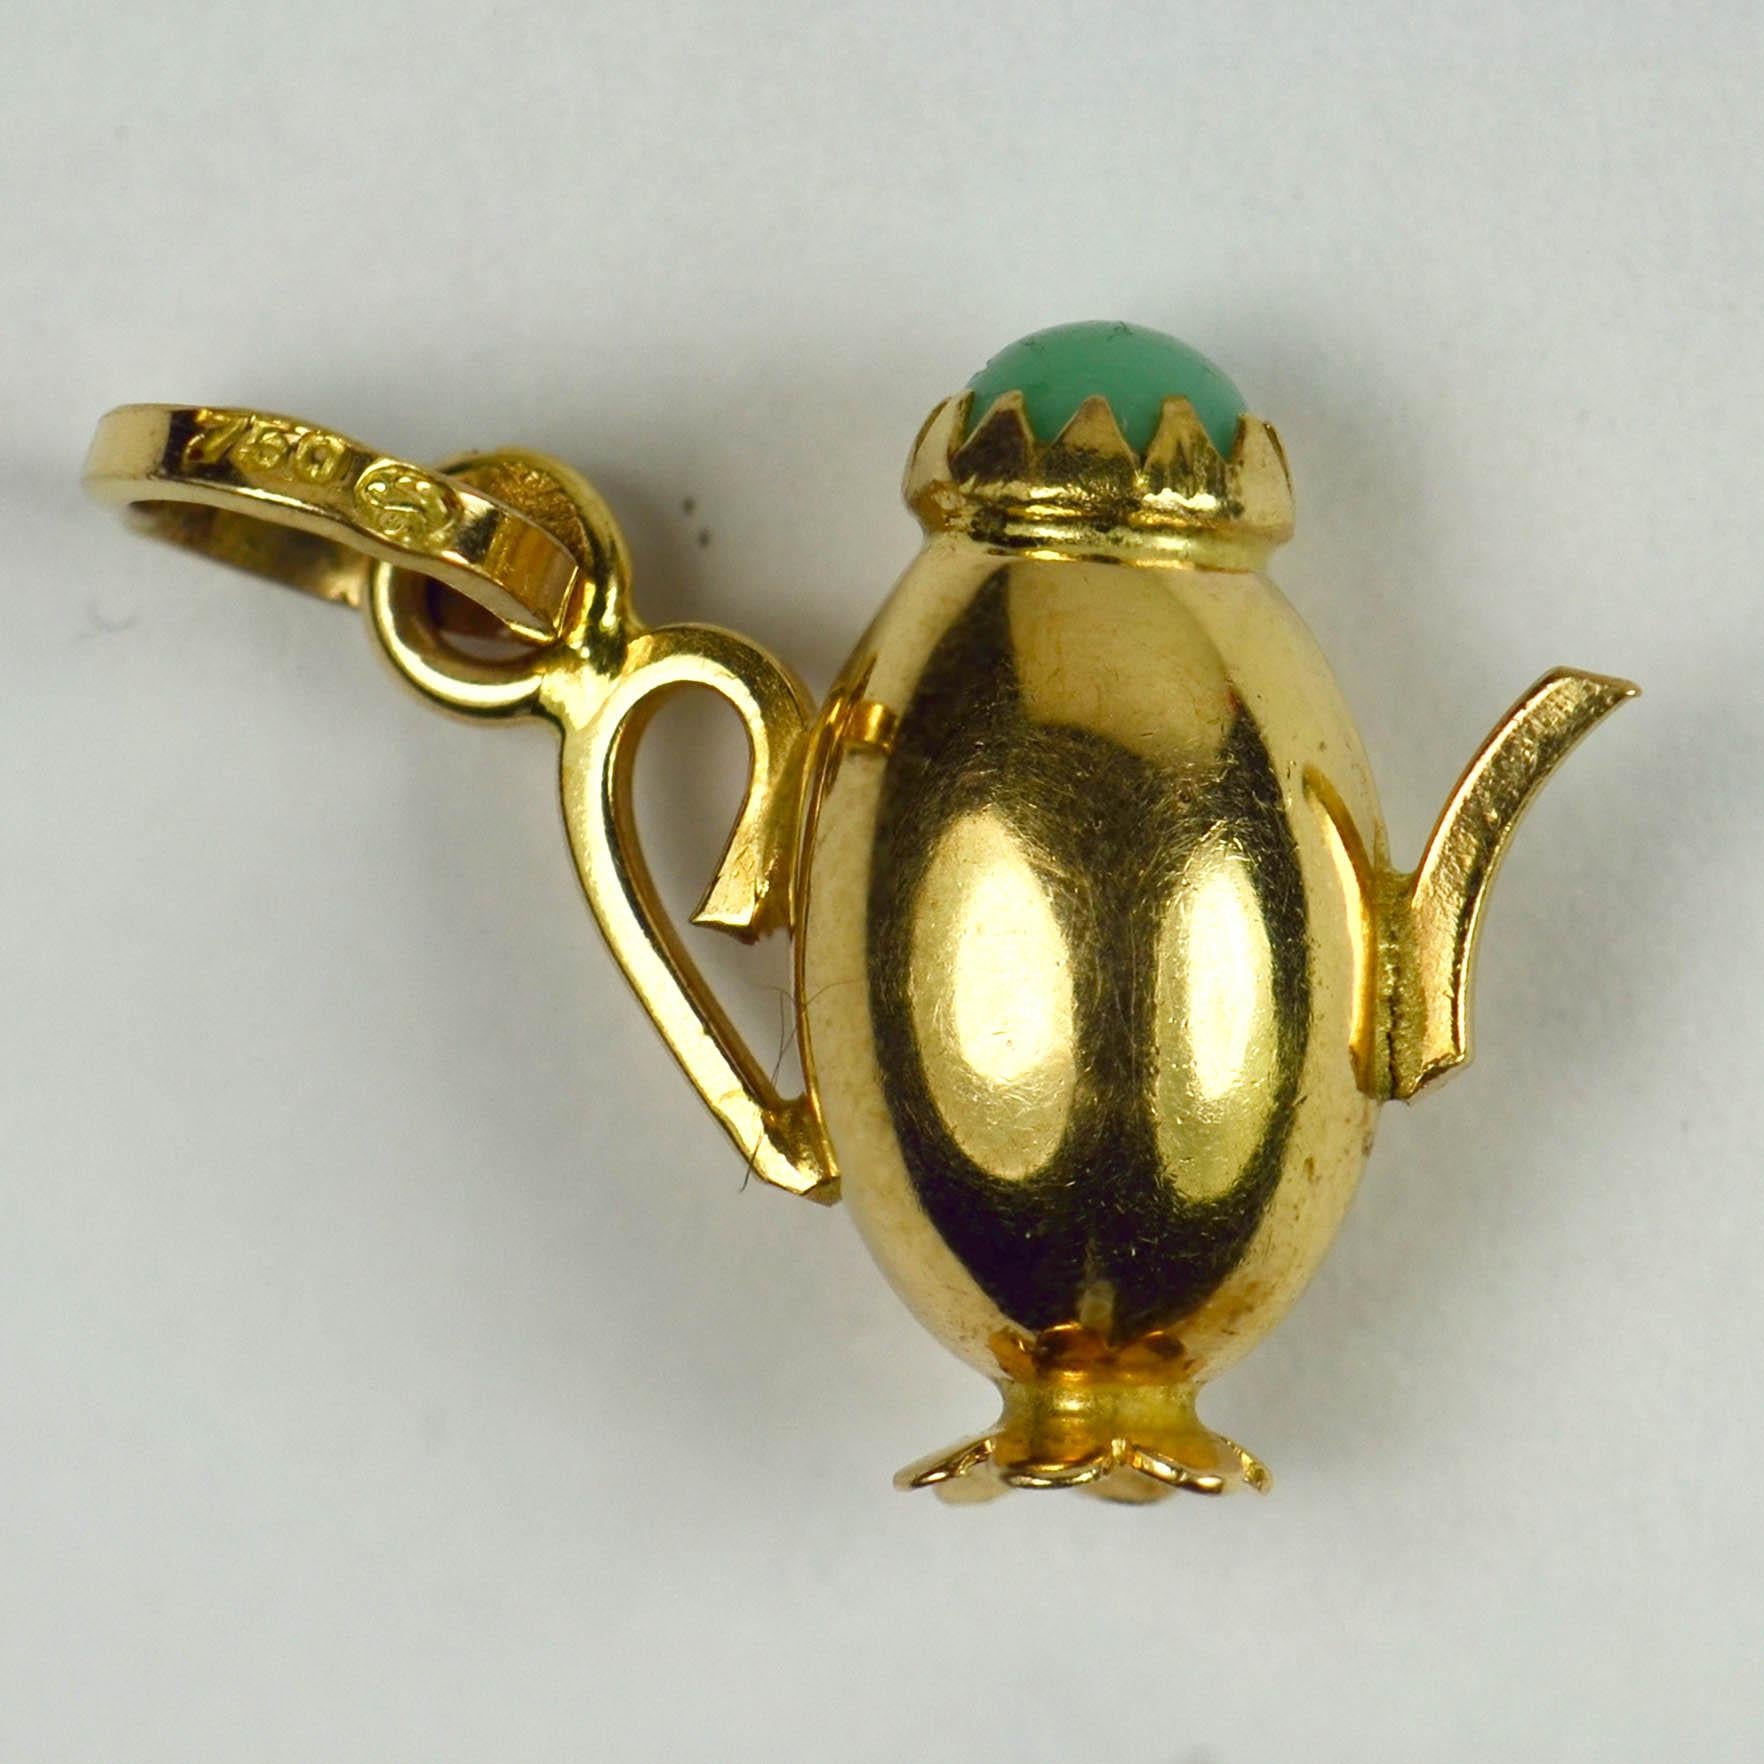 Un pendentif de charme en or jaune 18 carats (18K) conçu comme une cafetière avec un couvercle en pâte de turquoise. Estampillé de 750 et de la marque d'importation française pour l'or 18 carats entre 1984 et 1994, ainsi que d'une marque de